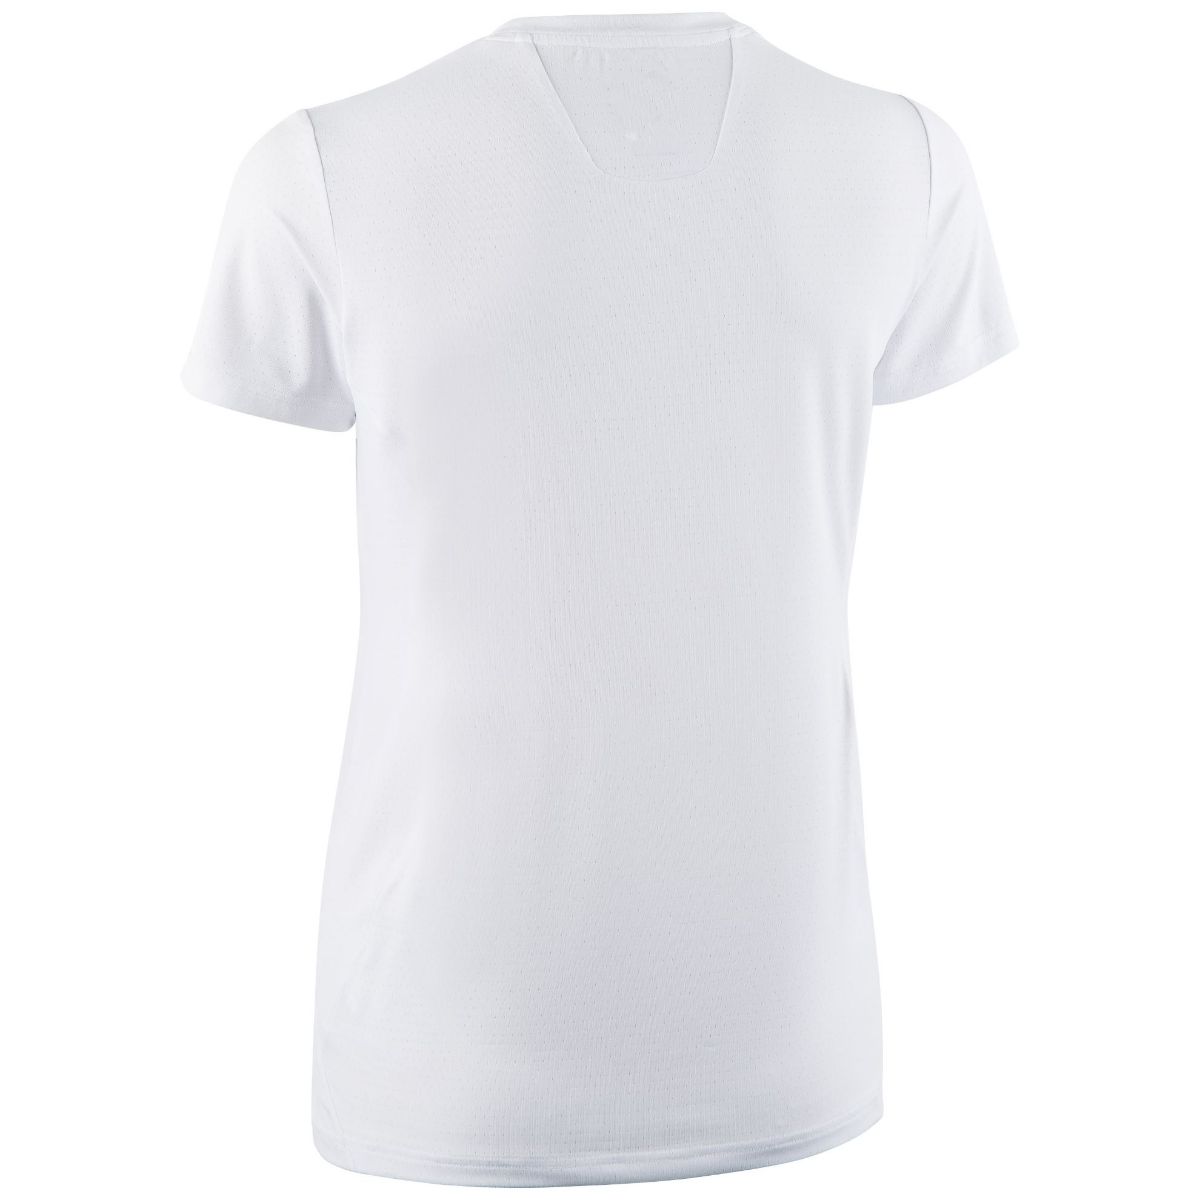 Bilde av Dæhlie  T-Shirt Focus Wmn 13000 white